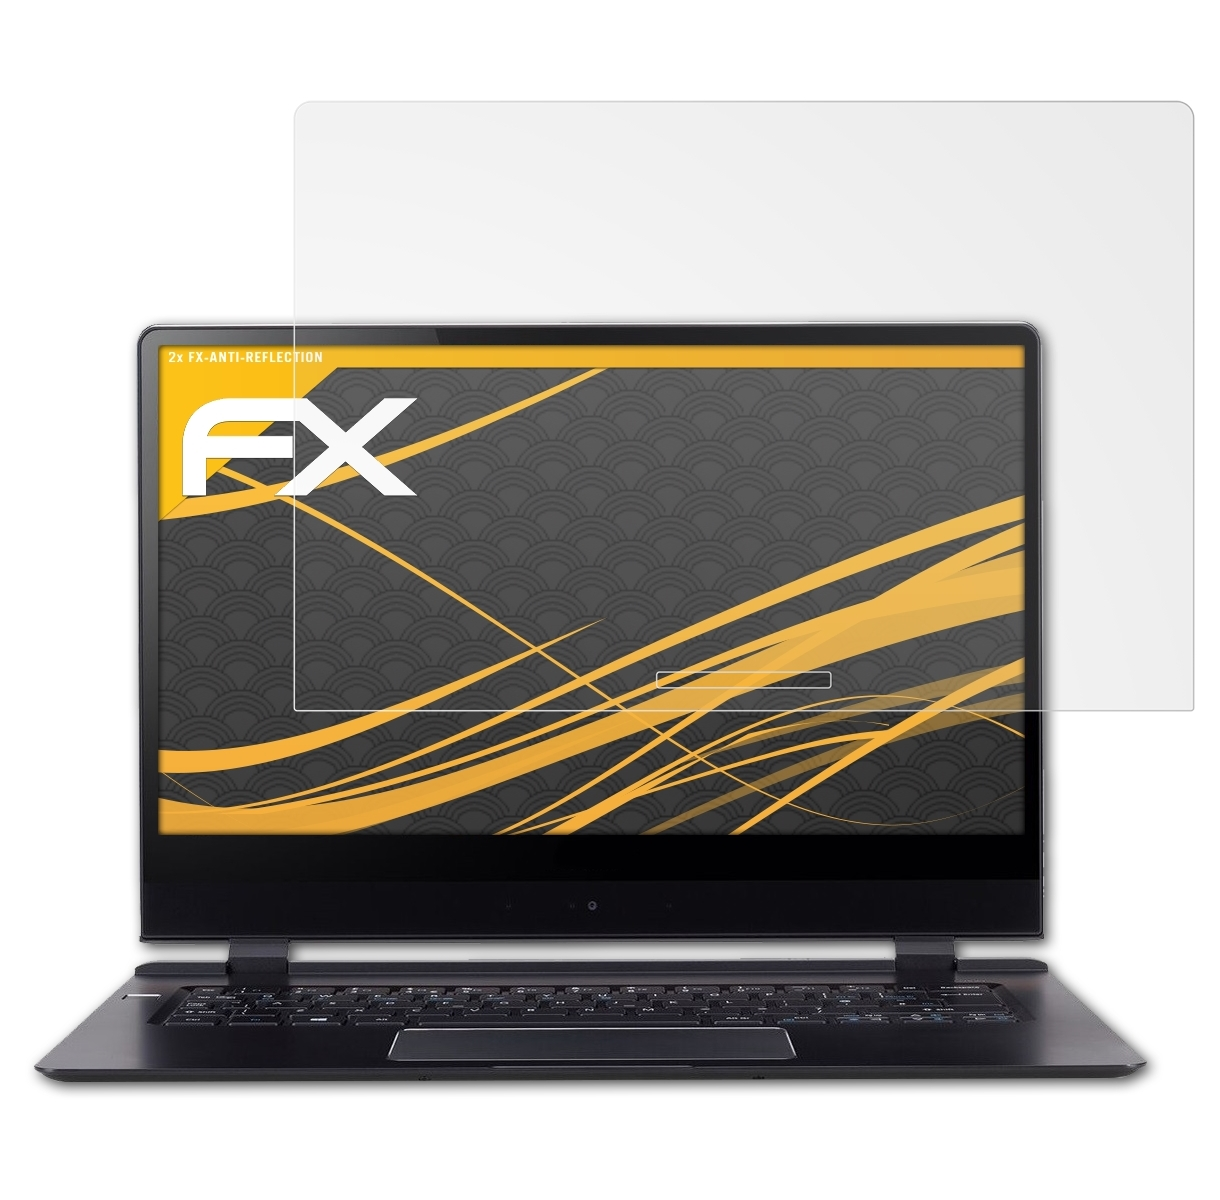 FX-Antireflex (SF714-51T)) 2x 2018 Acer Displayschutz(für 7 Swift ATFOLIX